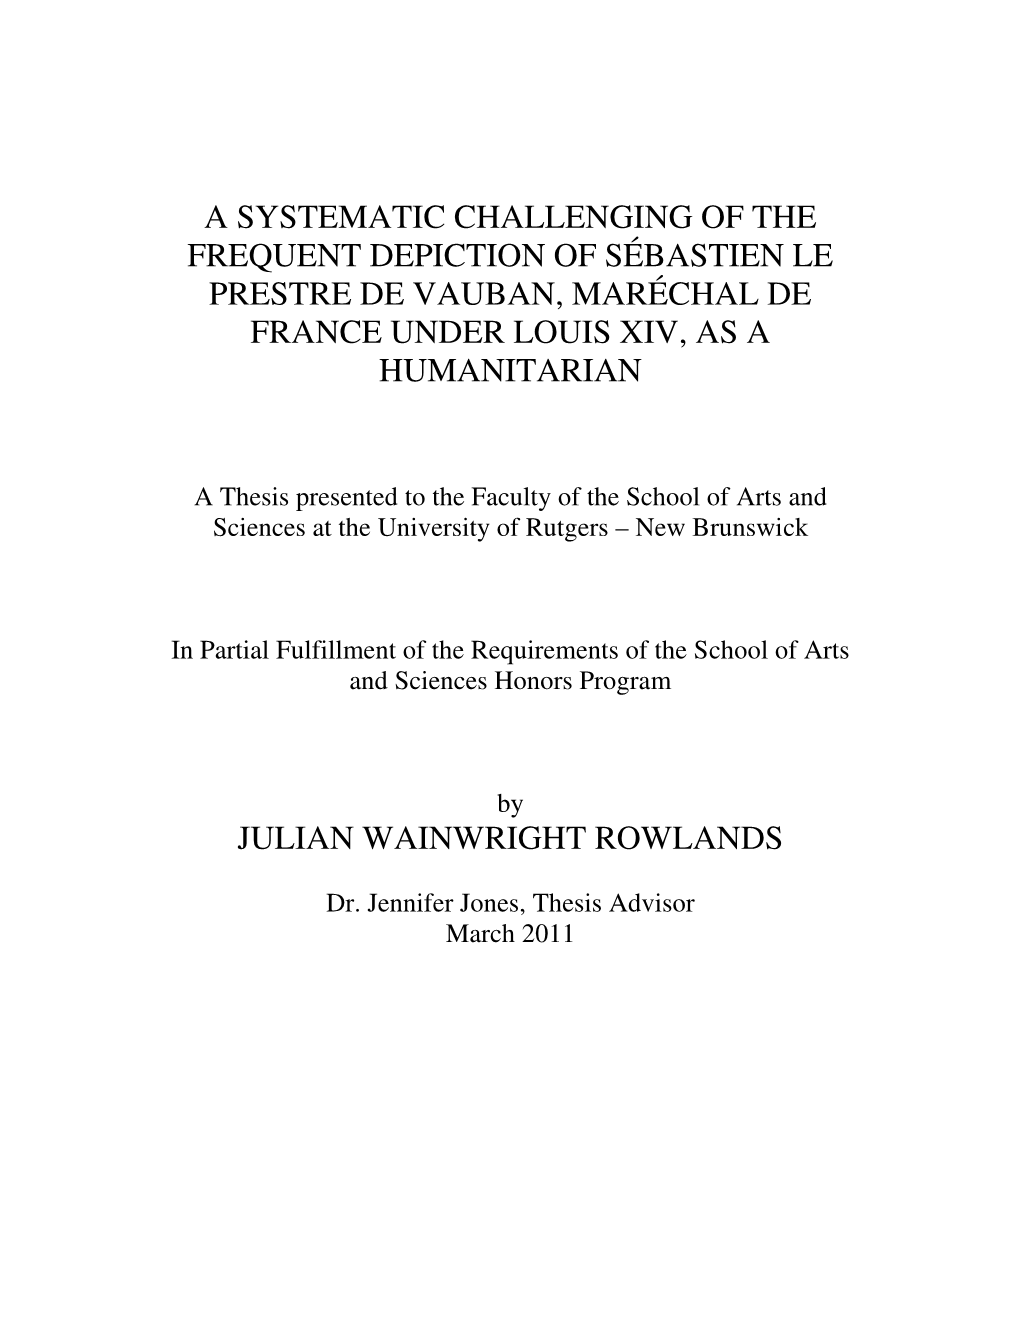 A Systematic Challenging of the Frequent Depiction of Sébastien Le Prestre De Vauban, Maréchal De France Under Louis Xiv, As a Humanitarian